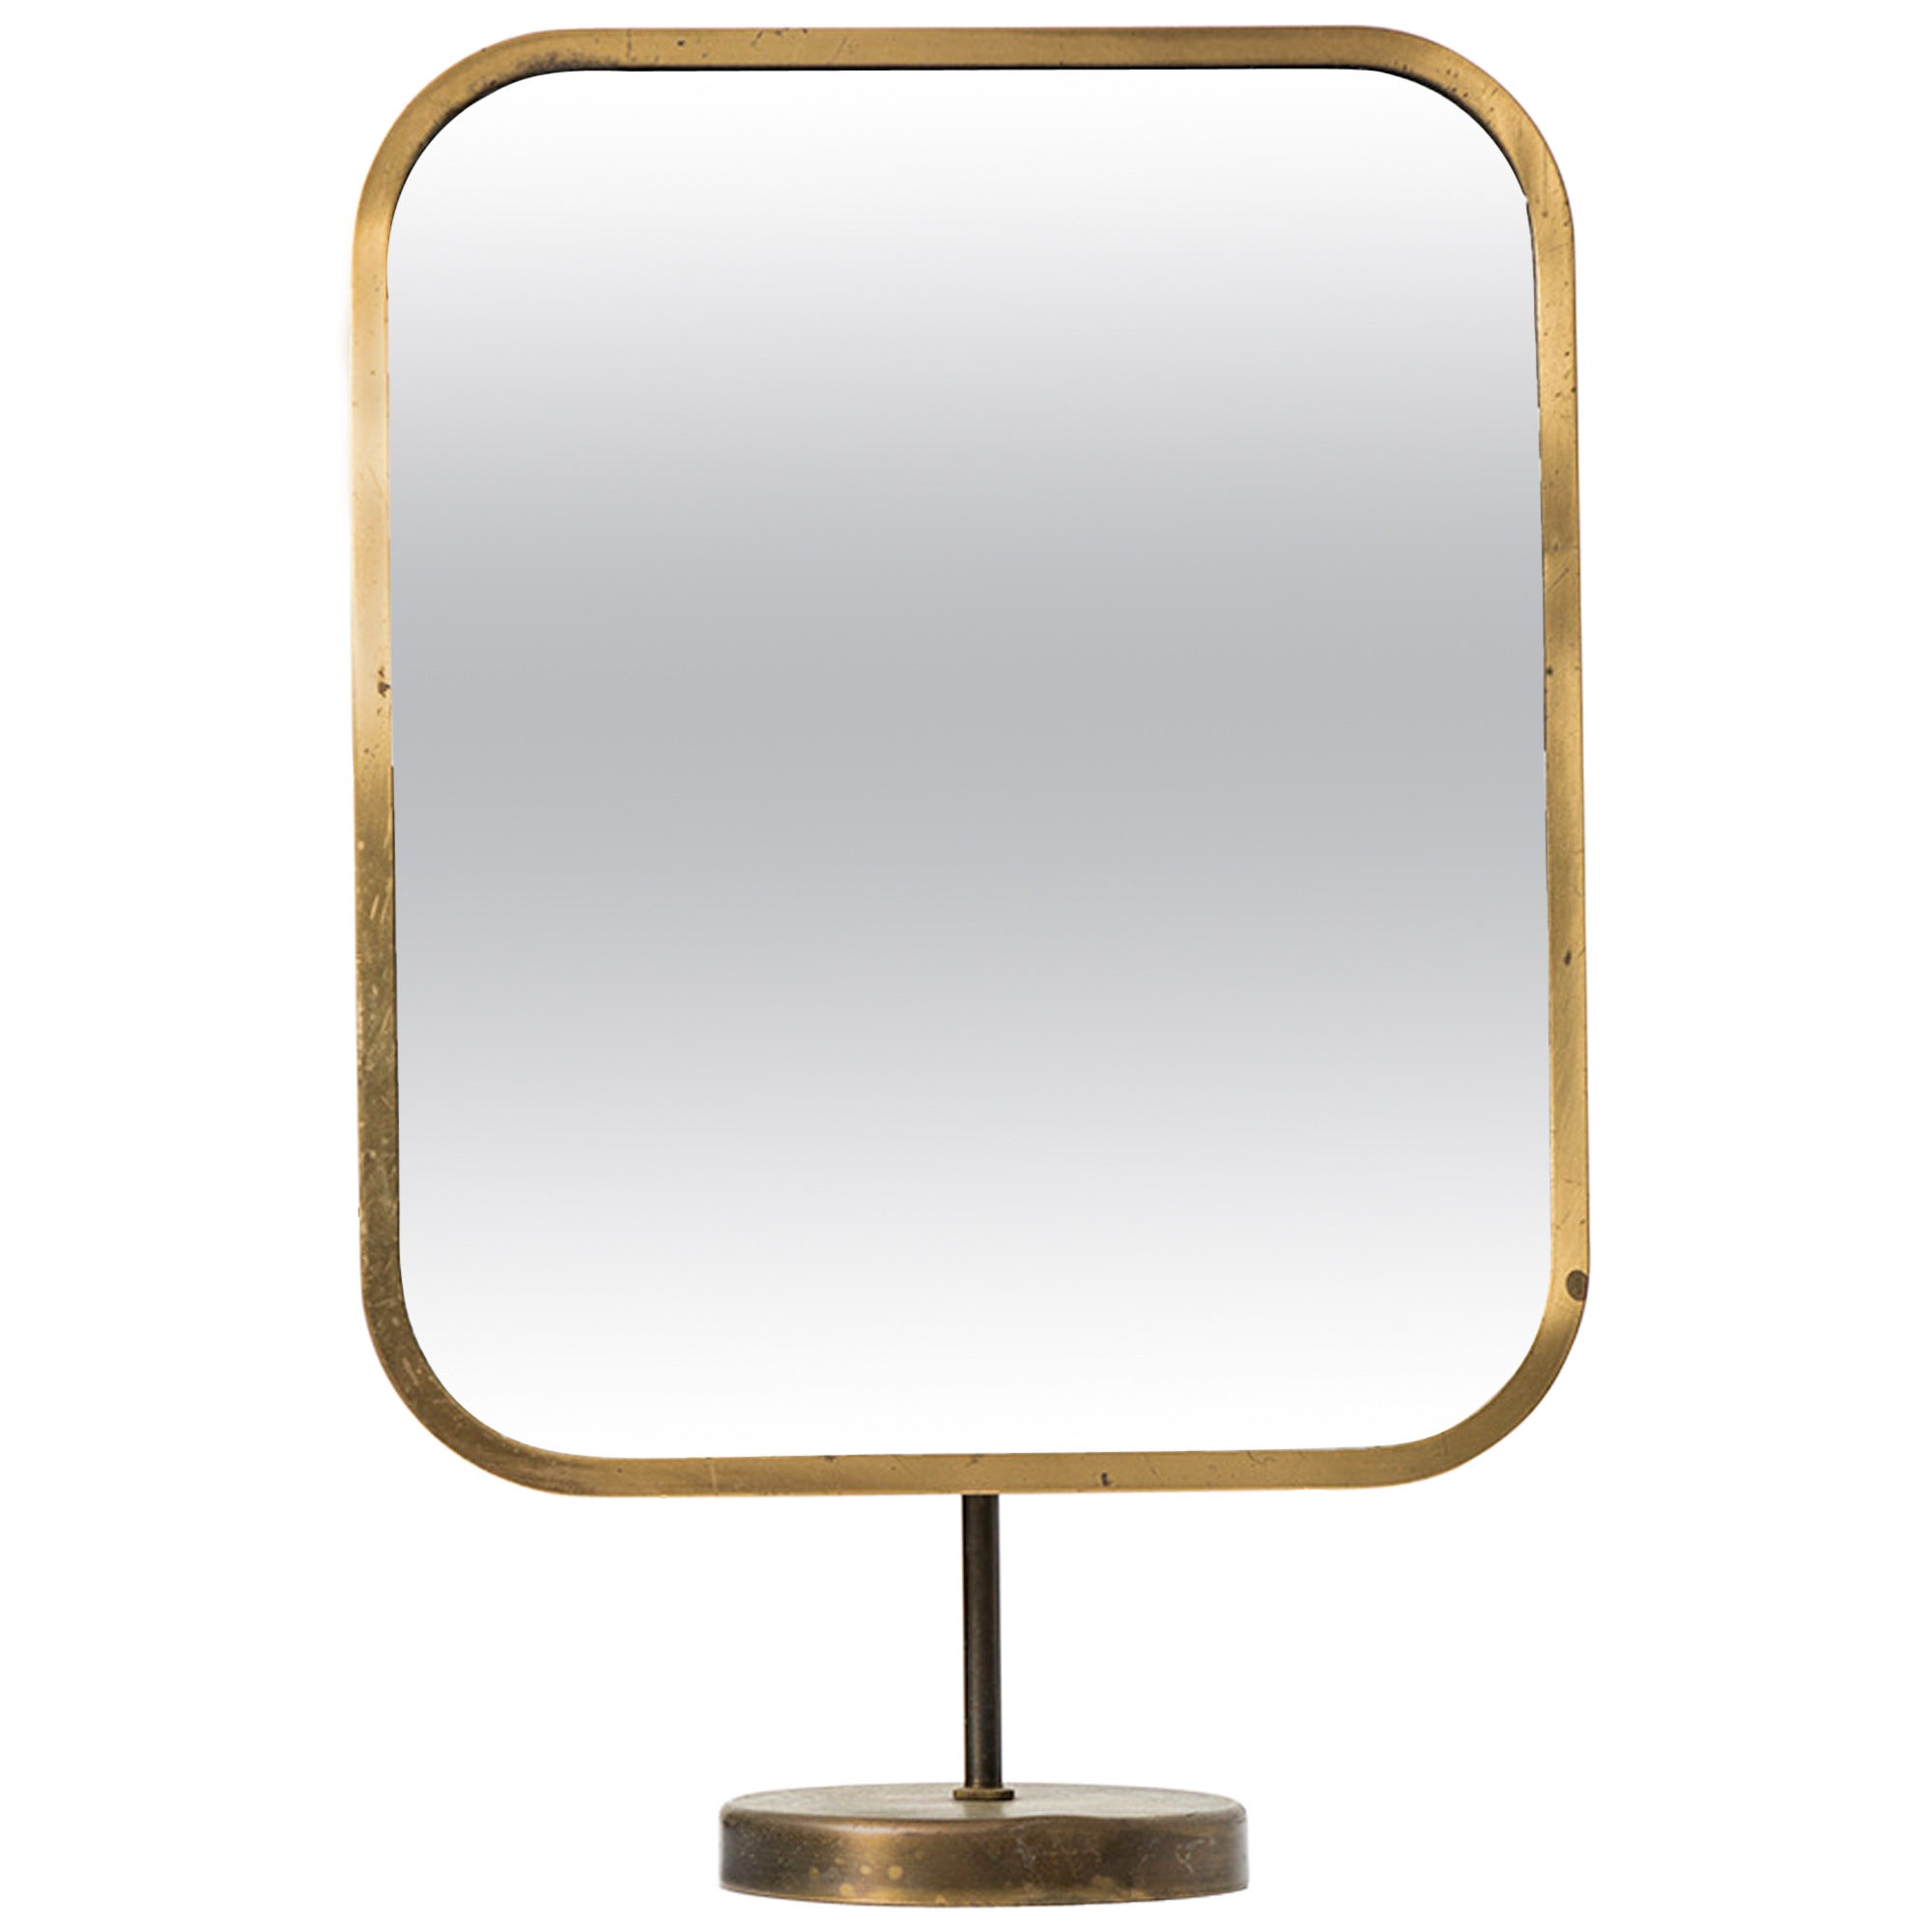 Josef Frank Table Mirror in Brass by Nordiska Kompaniet in Sweden